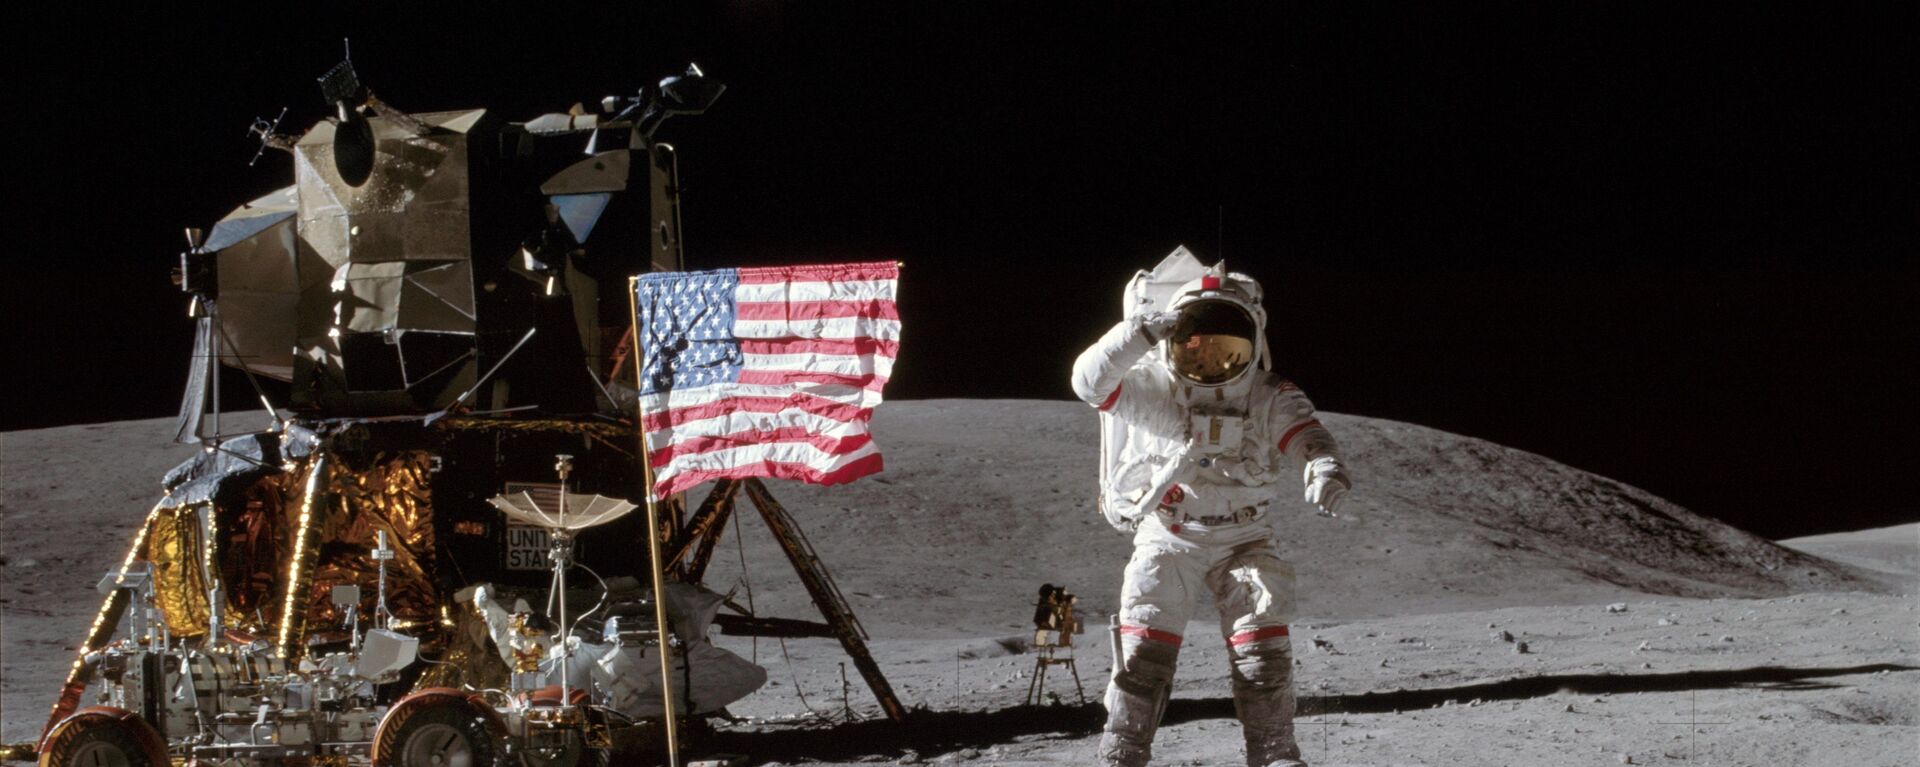 Амерички астронаут Џон Јанг, командант лунарне мисије „Аполо 16“, поздравља америчку заставу на површини Месеца. - Sputnik Србија, 1920, 15.07.2019